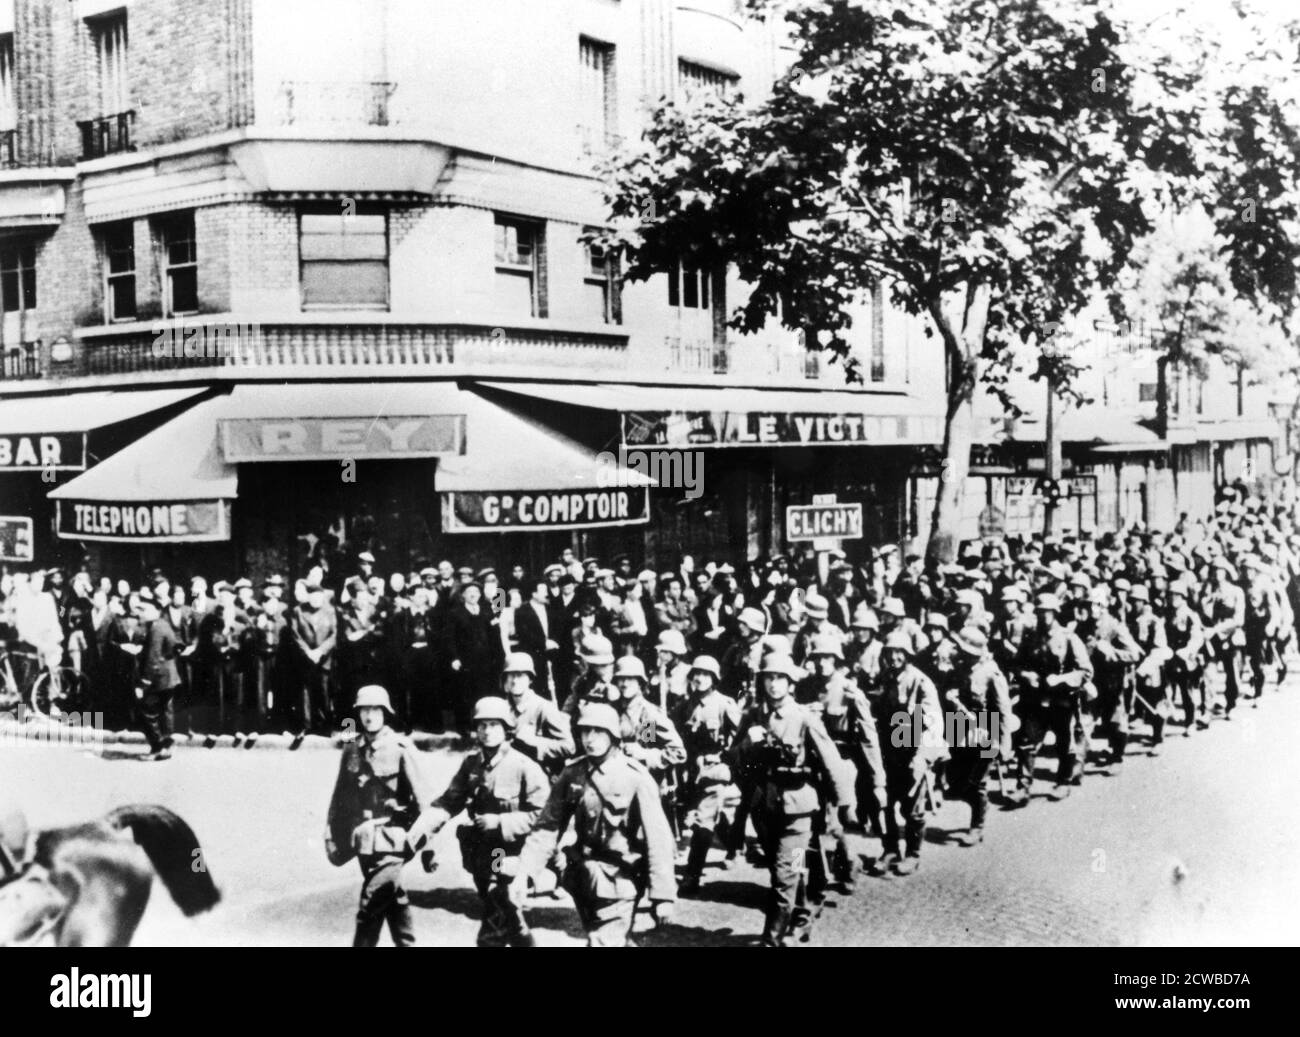 Ankunft der ersten deutschen Truppen in Paris, Juni 1940. Die Deutschen kamen am 14. Juni, zu Beginn einer vierjährigen Besatzung, nach Paris, das von der ausscheidenden französischen Regierung zur offenen Stadt erklärt worden war. Der Fotograf ist unbekannt. Stockfoto